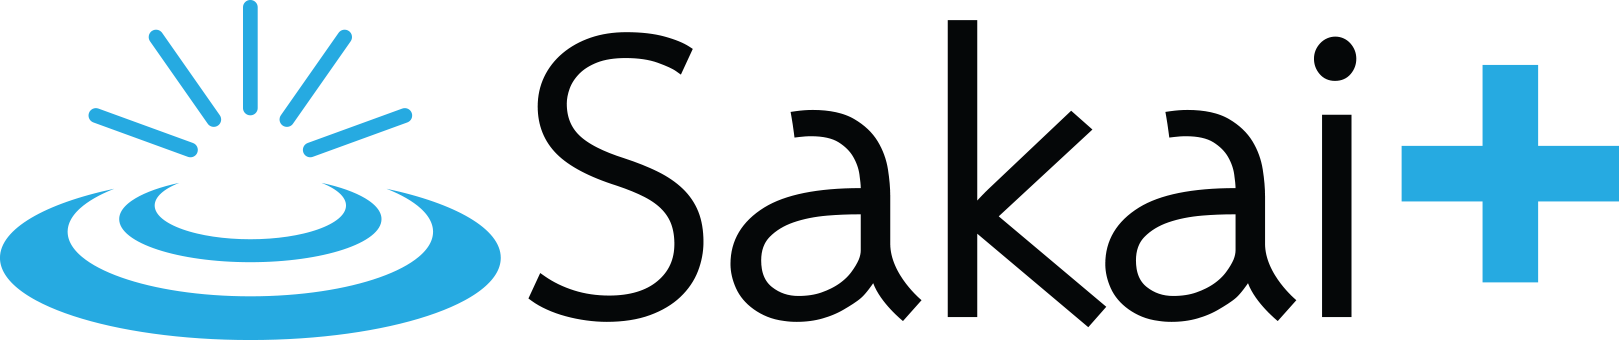 logo of Sakai 